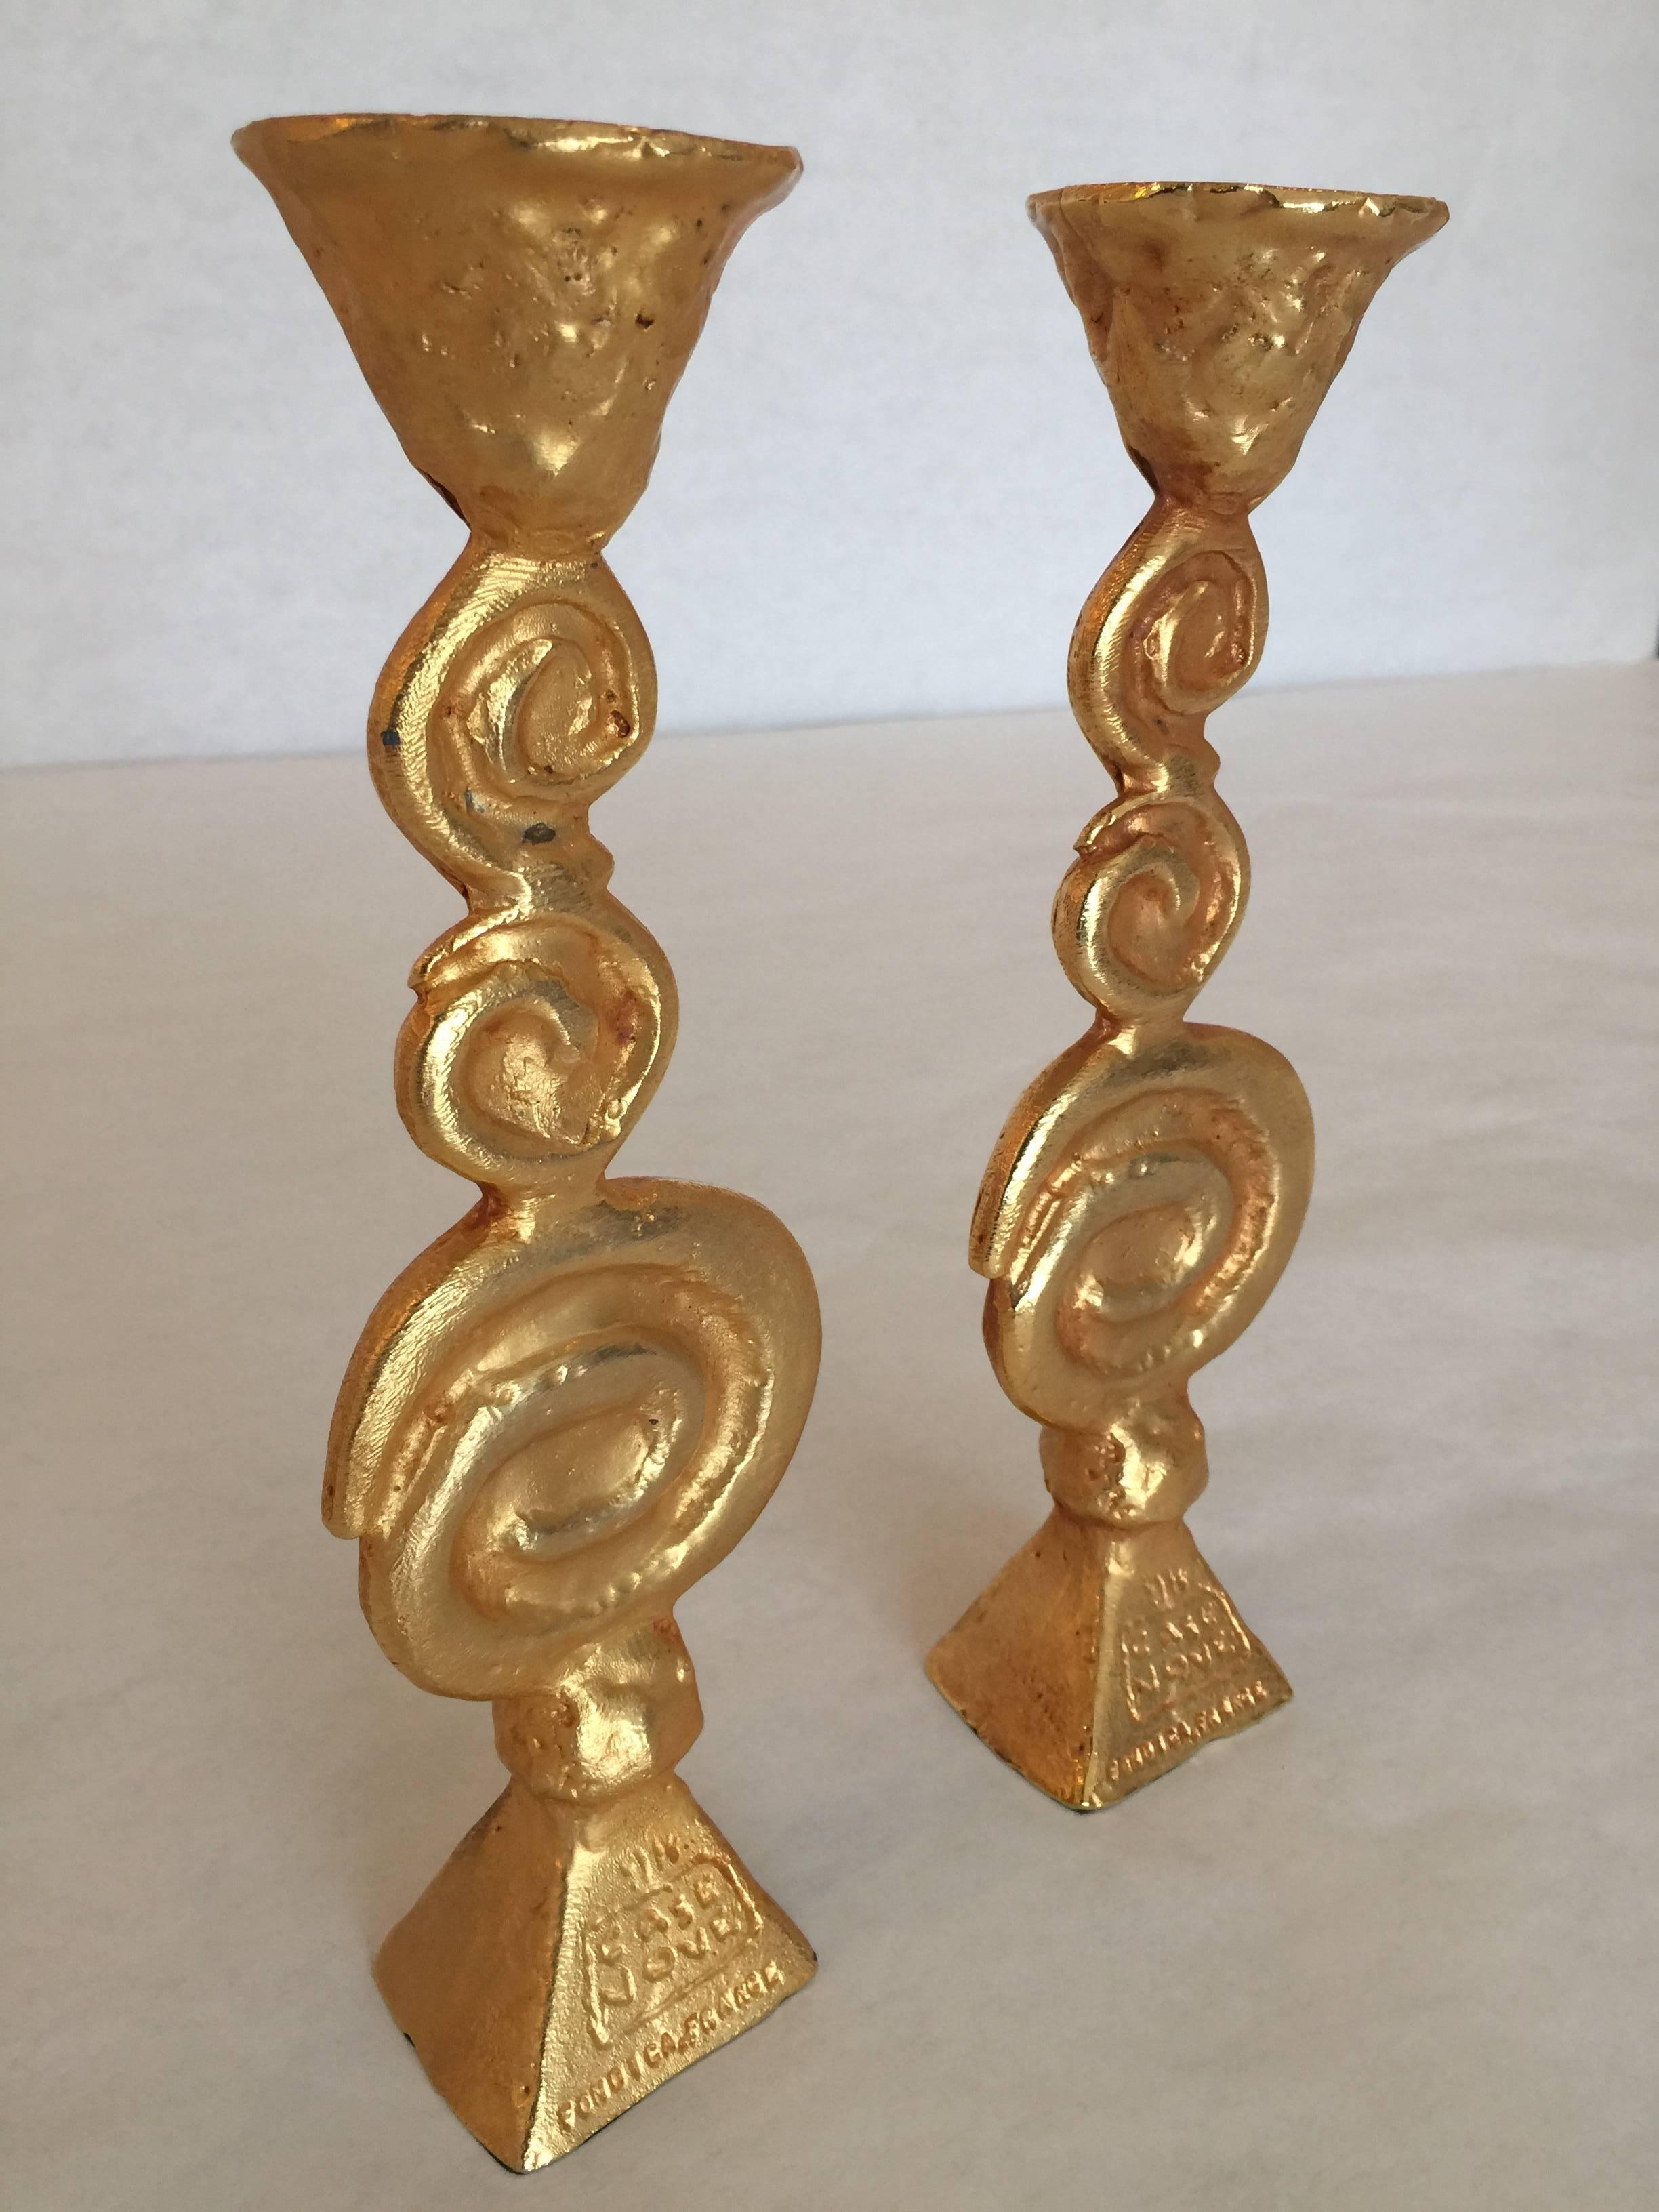 Extrêmement lourds en bronze doré, ces chandeliers français sont de grande collection. Ils sont assez rares et signés.